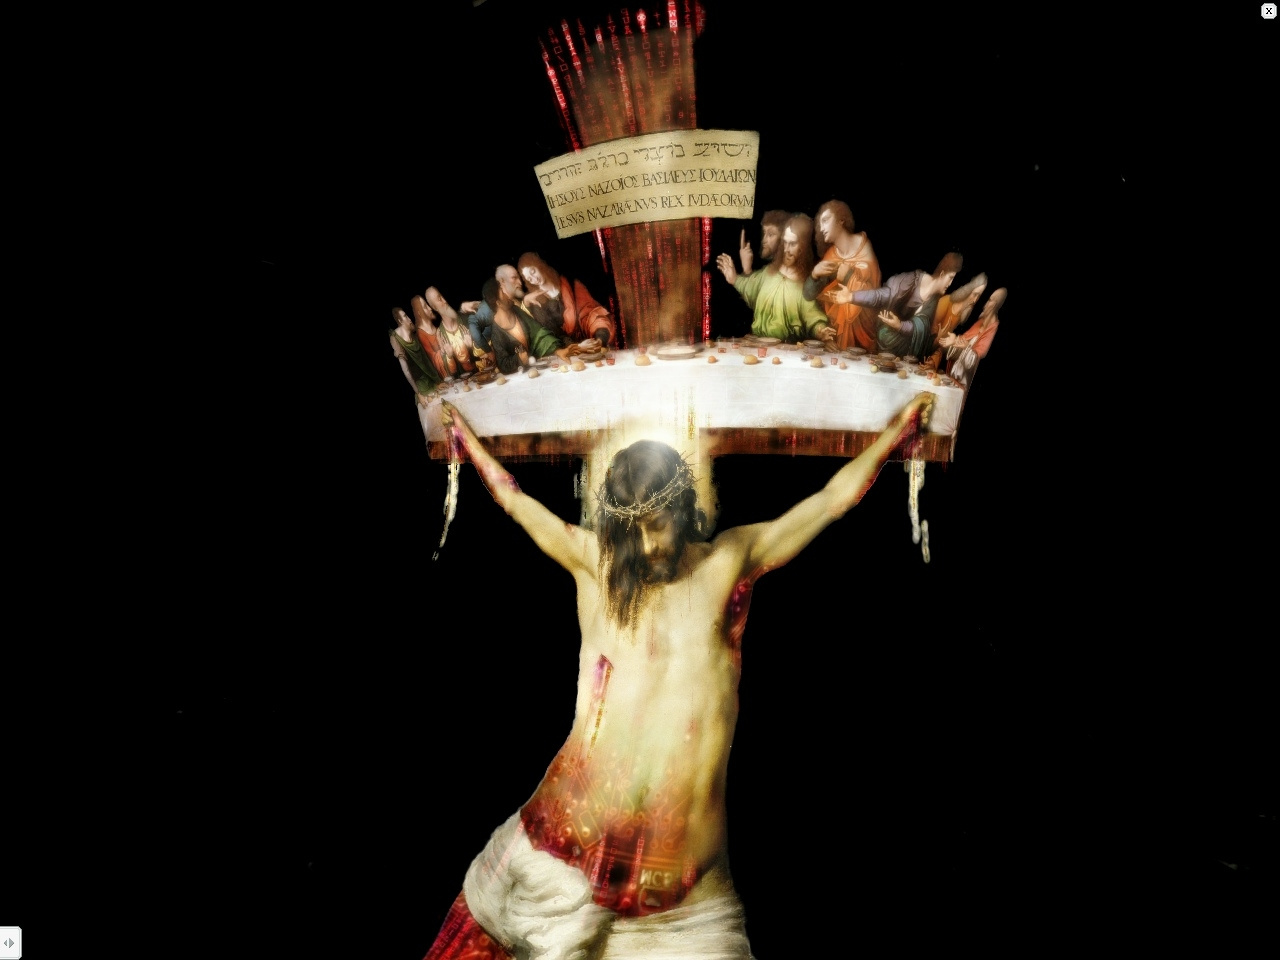 Cristo crucificado 5